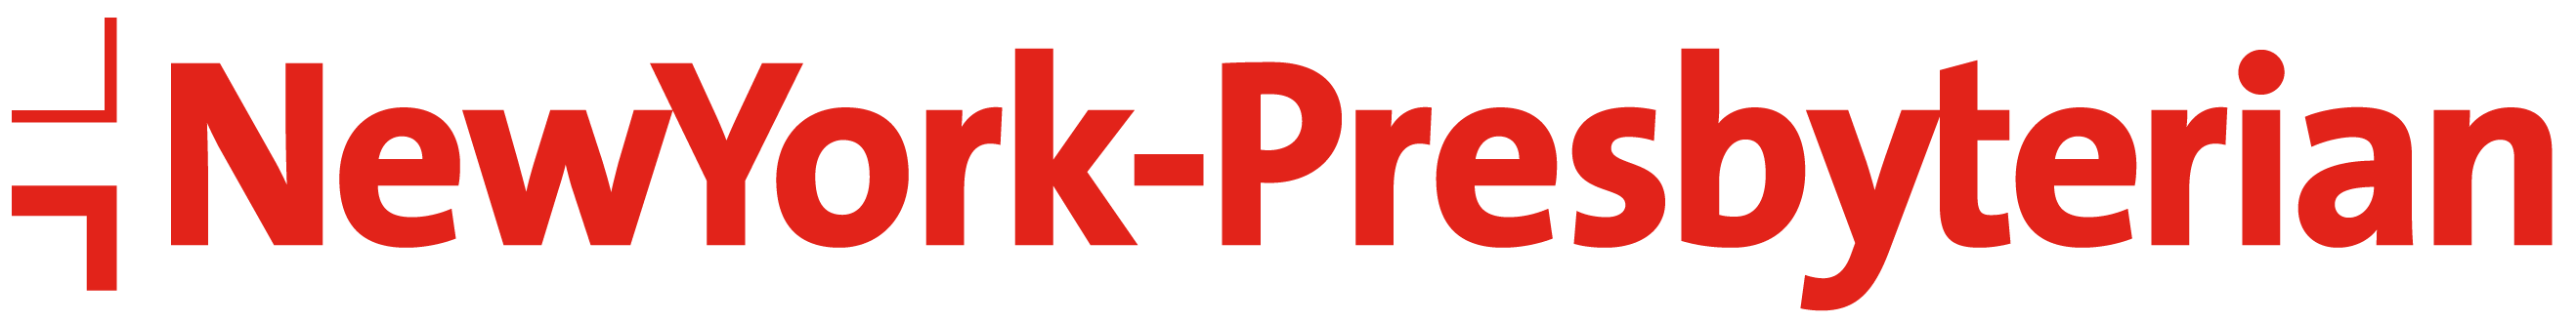 red_logo